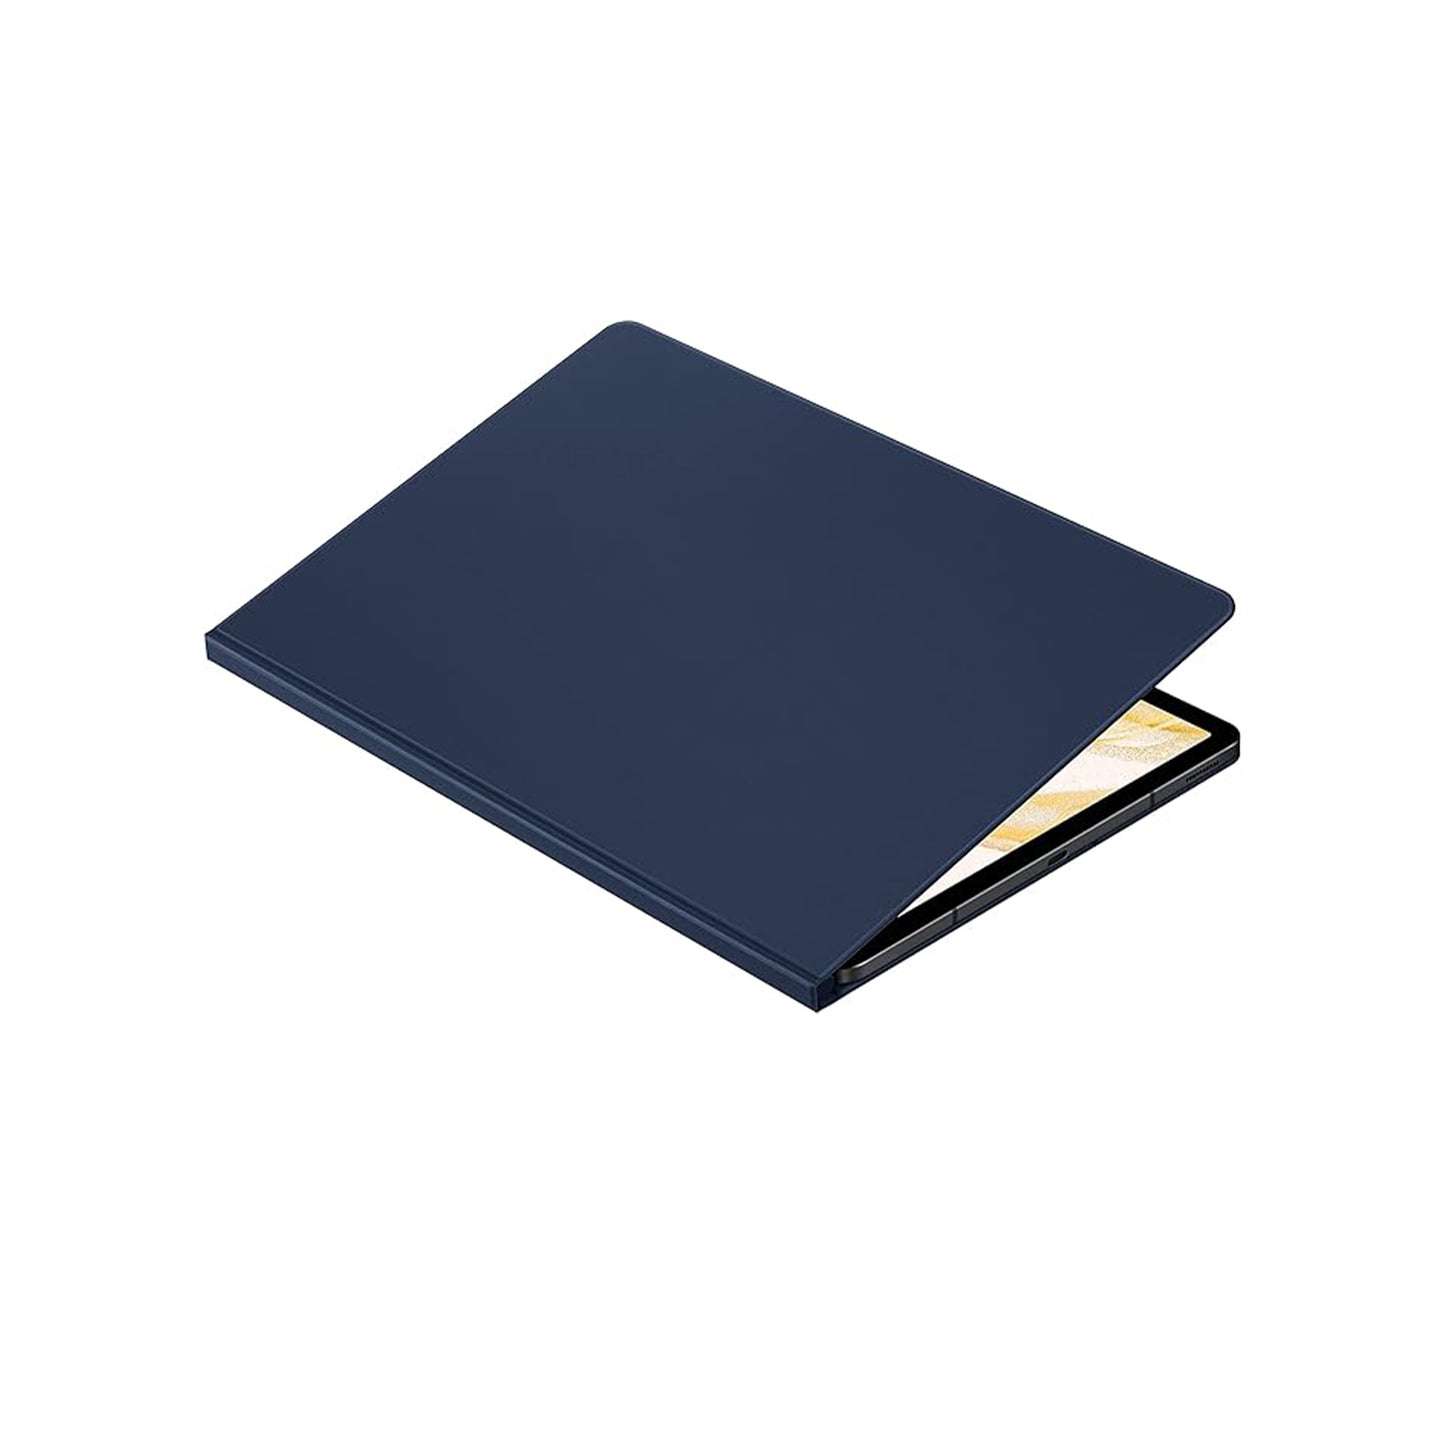 غطاء حماية لجهاز سامسونج جالاكسي تاب S8+، حافظة حماية للكمبيوتر اللوحي مع مسند لشاشة الوقوف، مغناطيسي، تصميم خفيف الوزن، إصدار الولايات المتحدة، كحلي غامض 